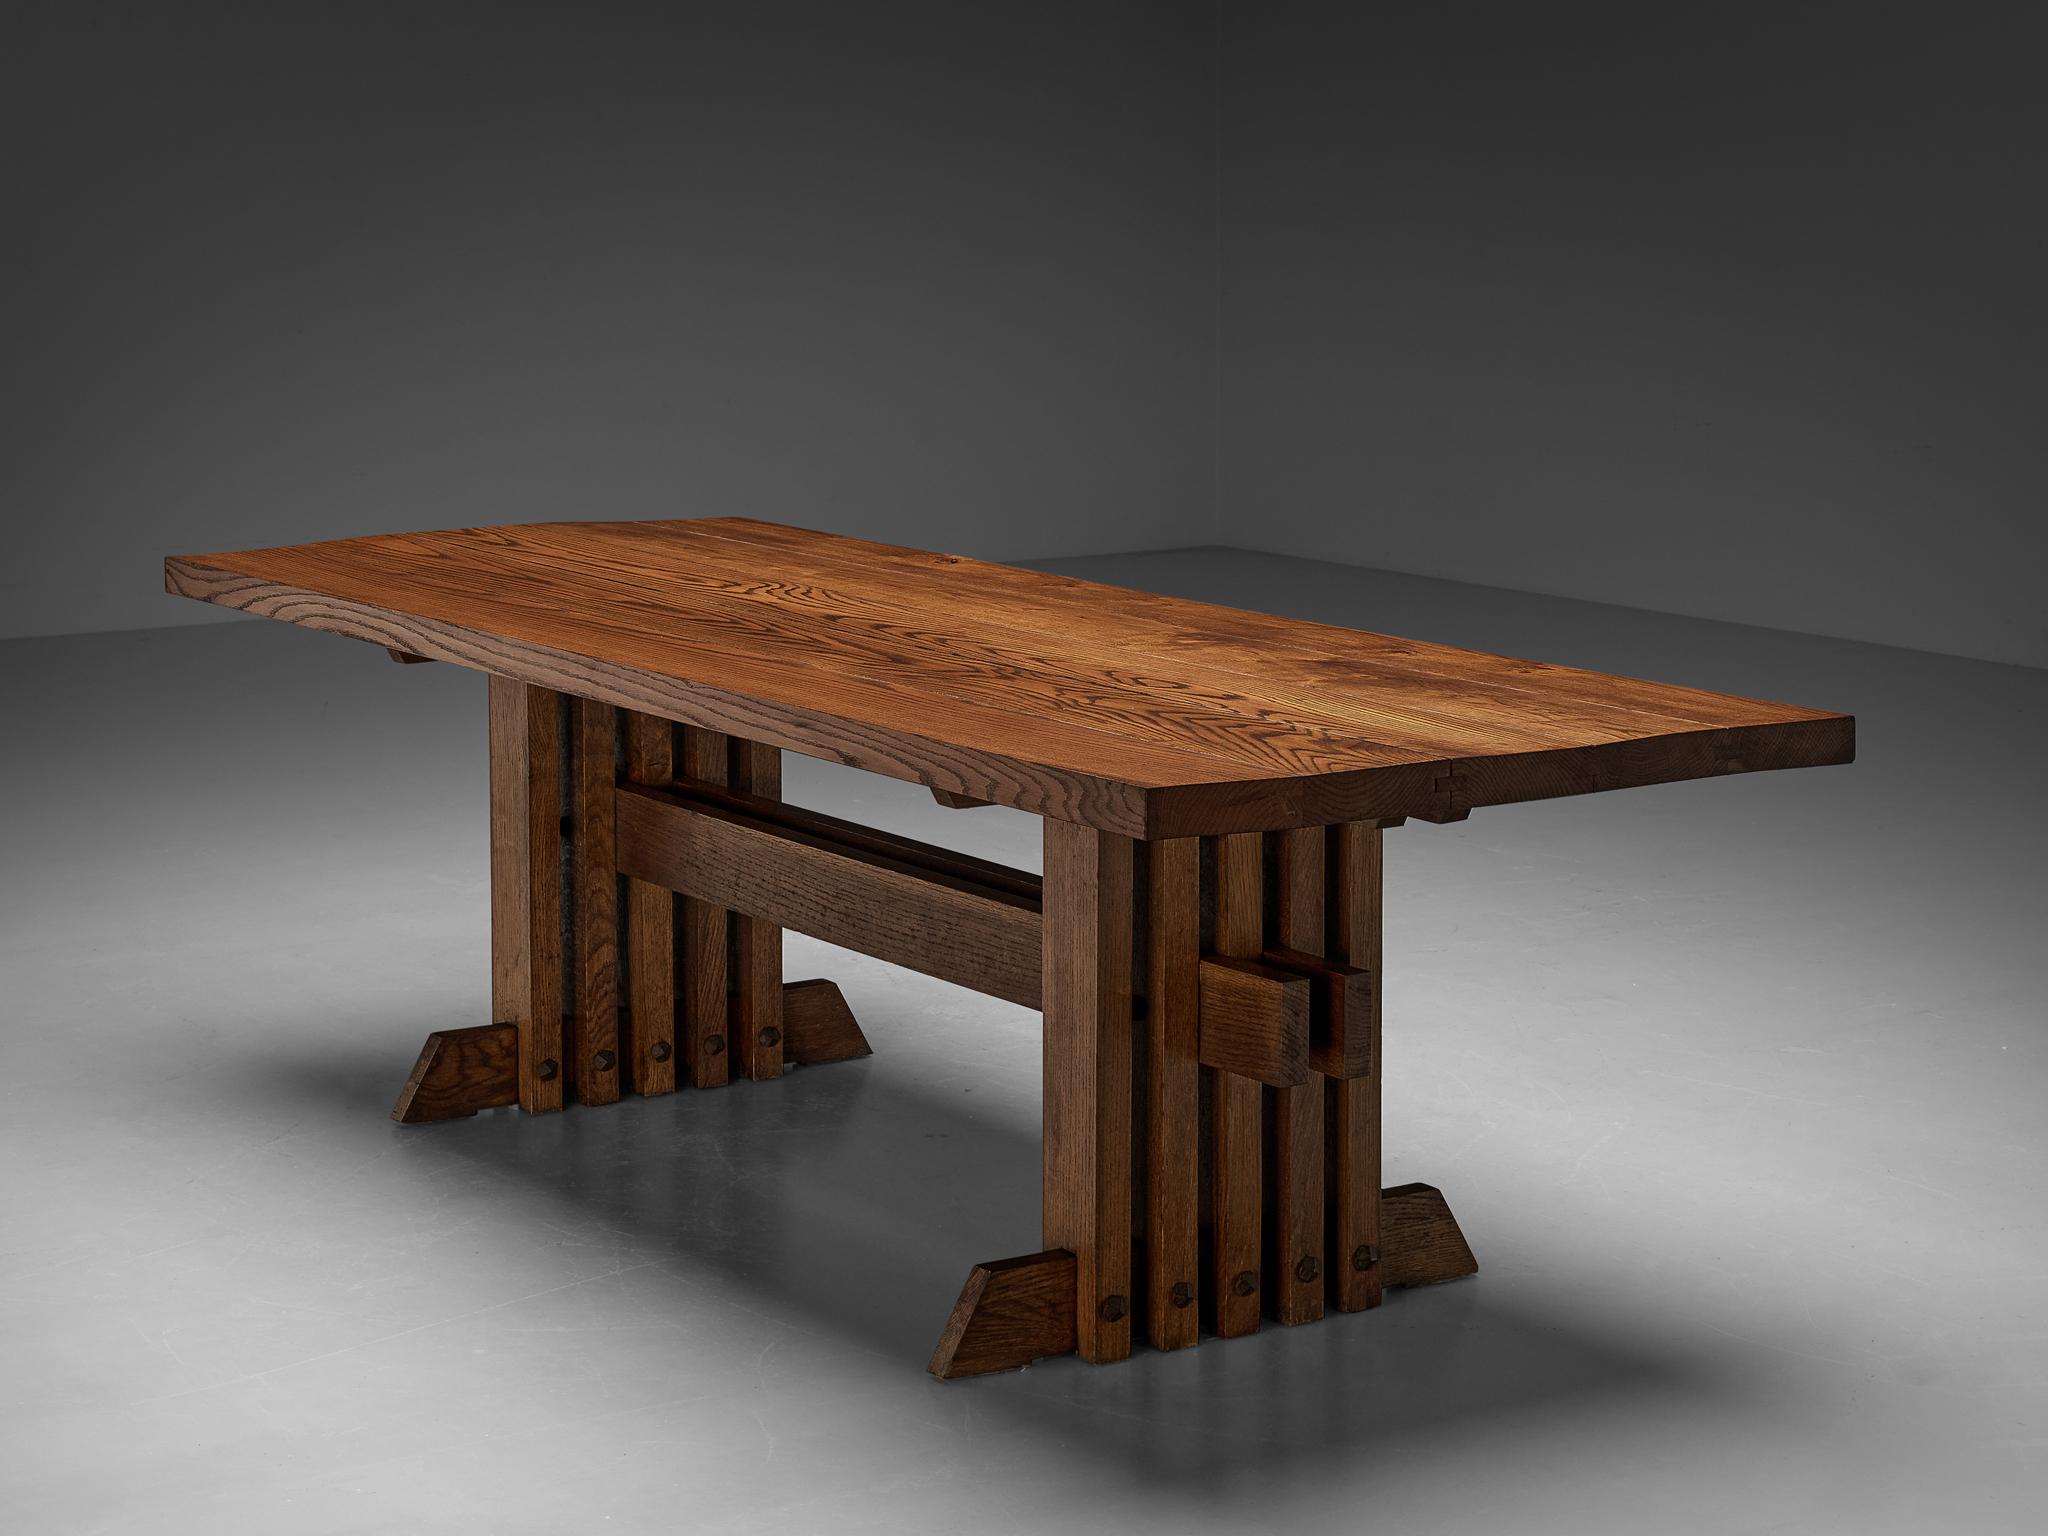 Jordi Vilanova I Bosch, Esstisch, Eiche, Eisen, Spanien, 1960er Jahre.

Dieser Tisch ist solide, architektonisch und robust. Designqualitäten, die sowohl für das spanische Design der Jahrhundertmitte als auch insbesondere für die Arbeiten von Jordi